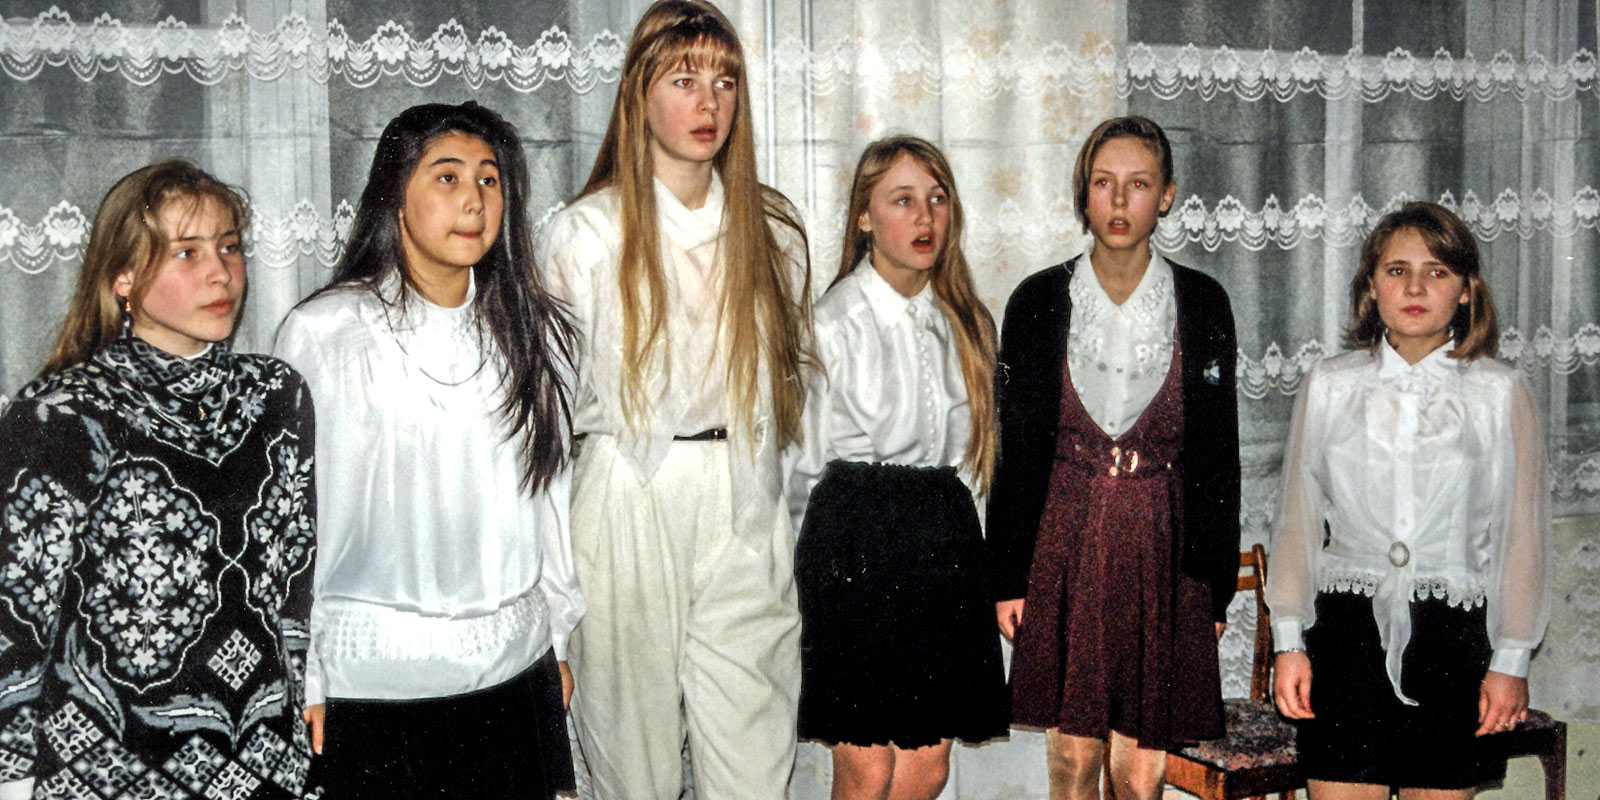 Tsvetnopolje küla tütarlaste ansambel koosneb tänapäeval eri rahvuste esindajaist ning esitab põhiliselt vene laule. Foto: A. Korb 1997. ERA, VF 532.